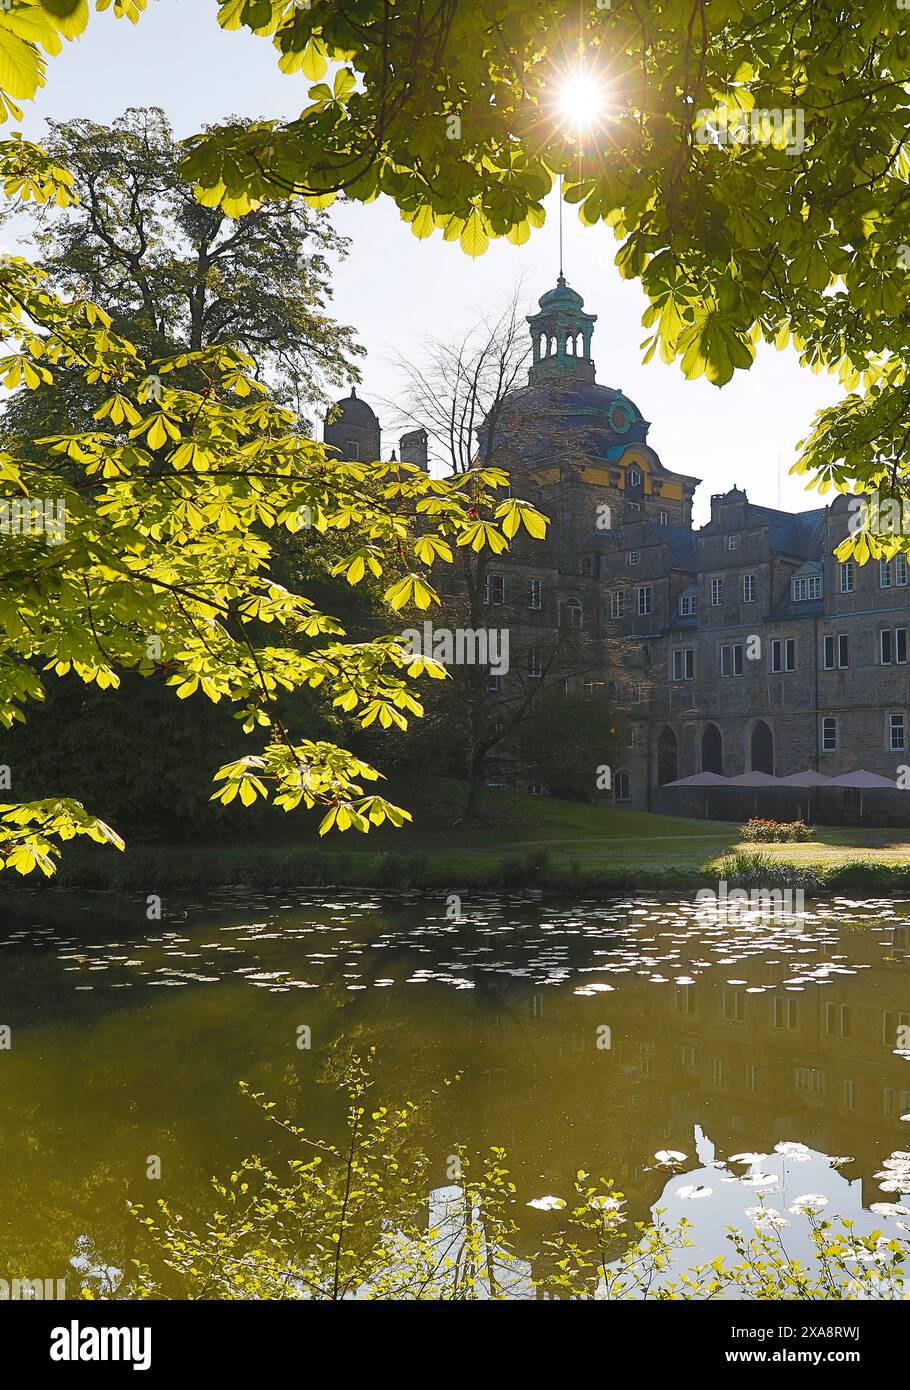 Château de Bueckeburg, siège ancestral de la Maison de Schaumburg-Lippe, Allemagne, basse-Saxe, Bueckeburg Banque D'Images